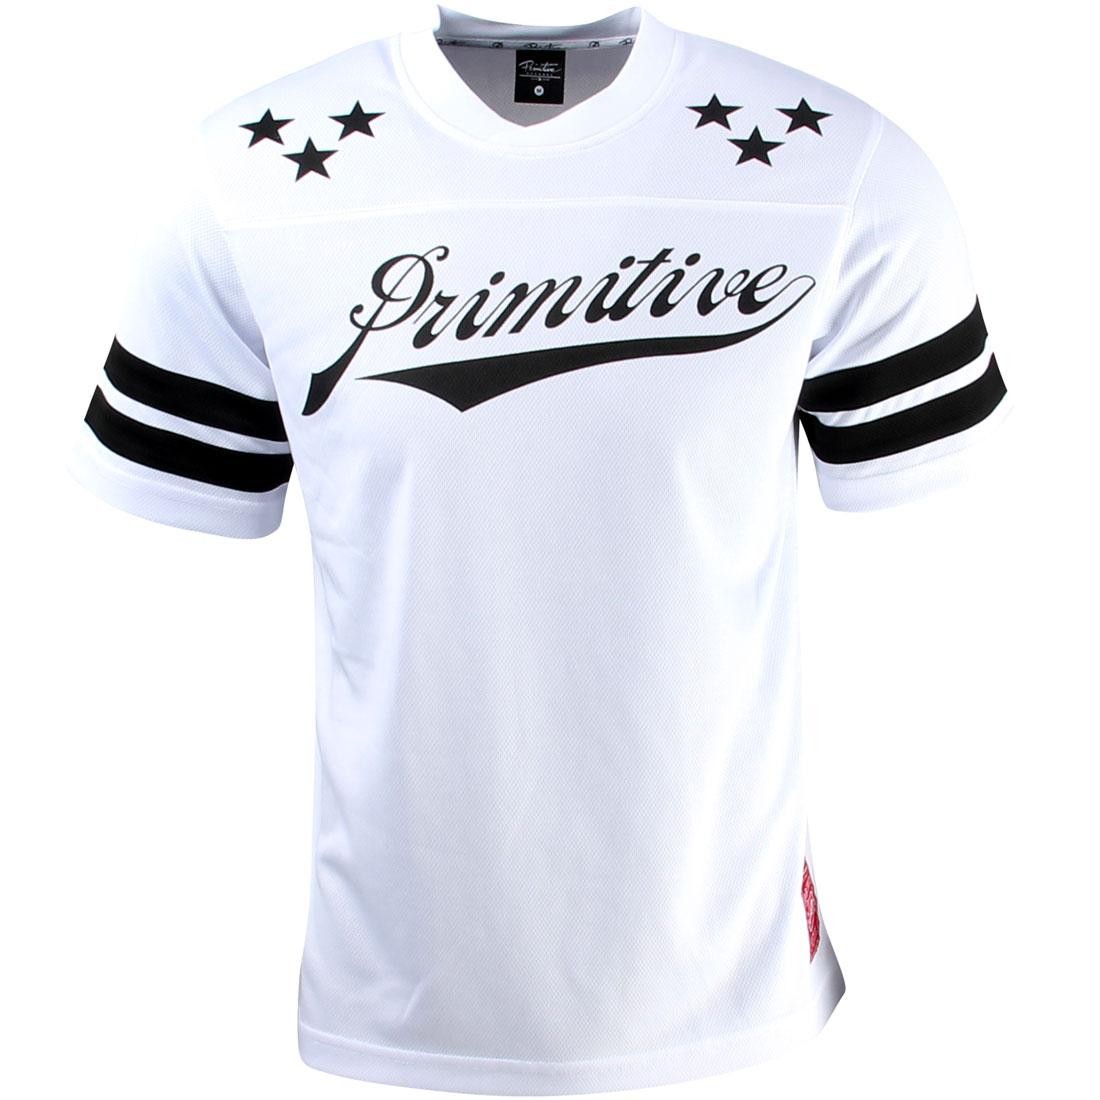 Primitive All Star Soccer Shirt (white)